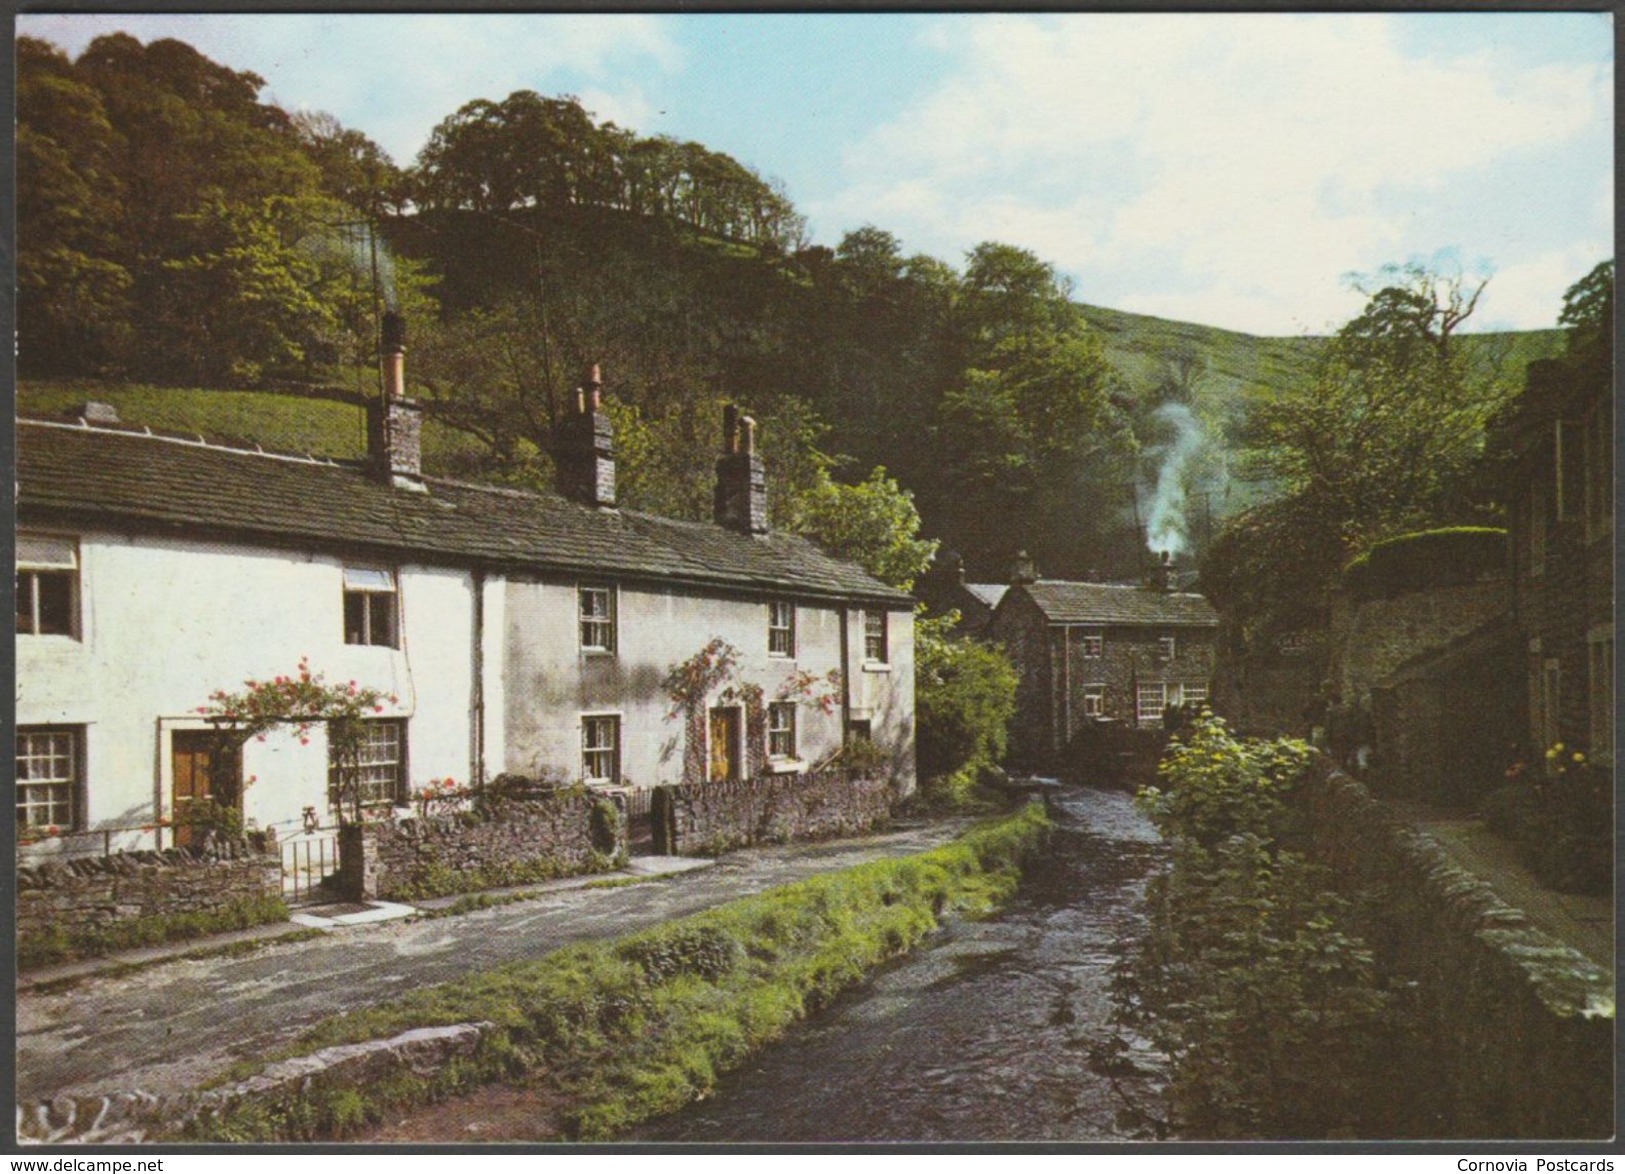 Castleton, Derbyshire, C.1980s - J Arthur Dixon Postcard - Derbyshire